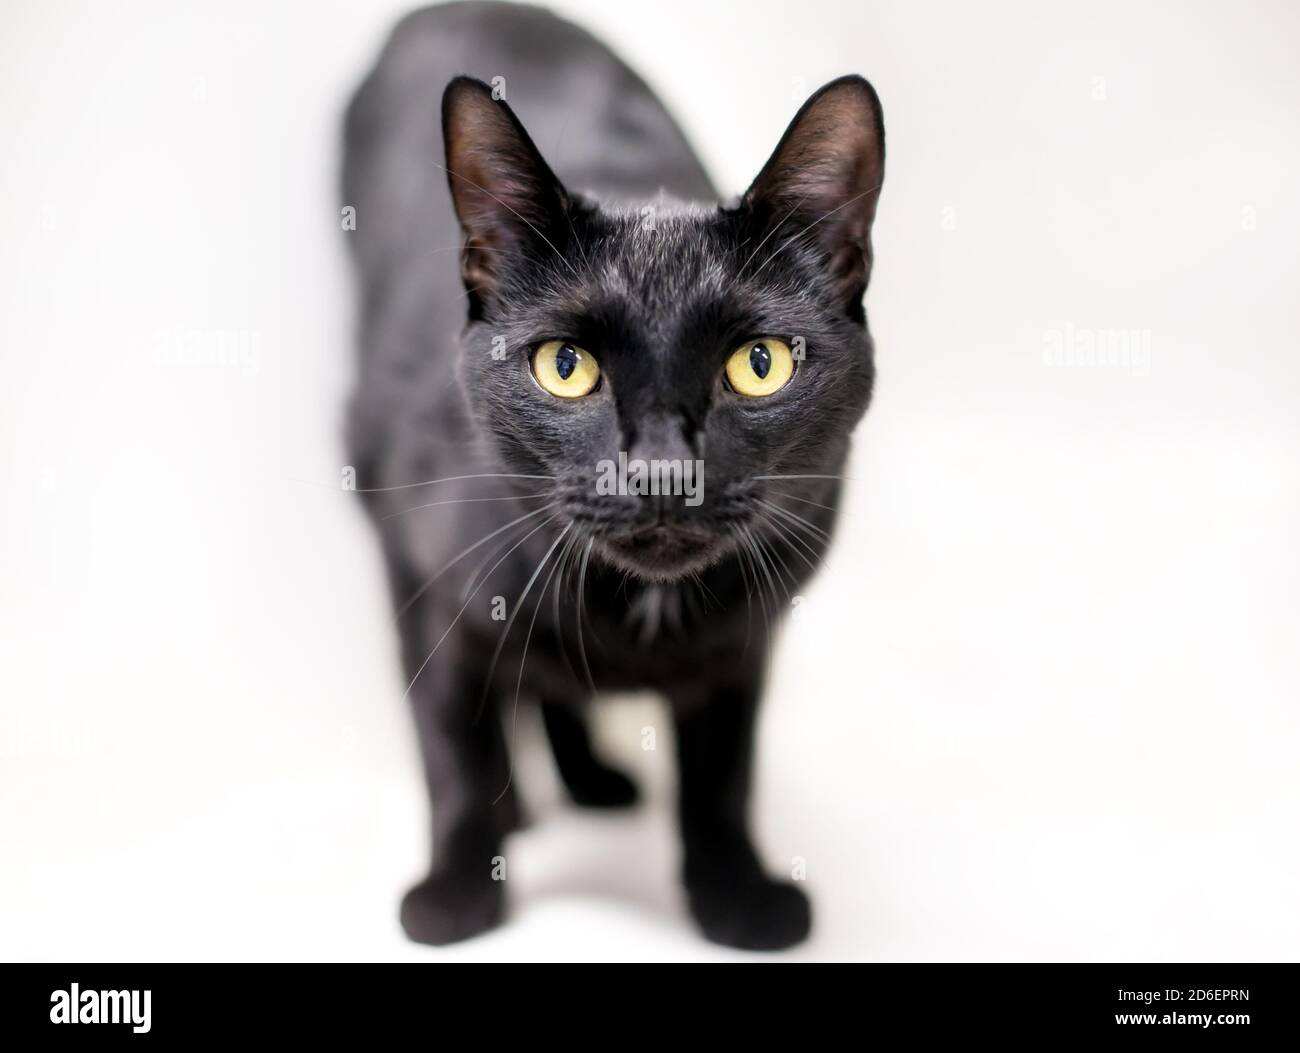 Un chat de shorthair domestique noir avec des yeux jaunes regardant la caméra Banque D'Images